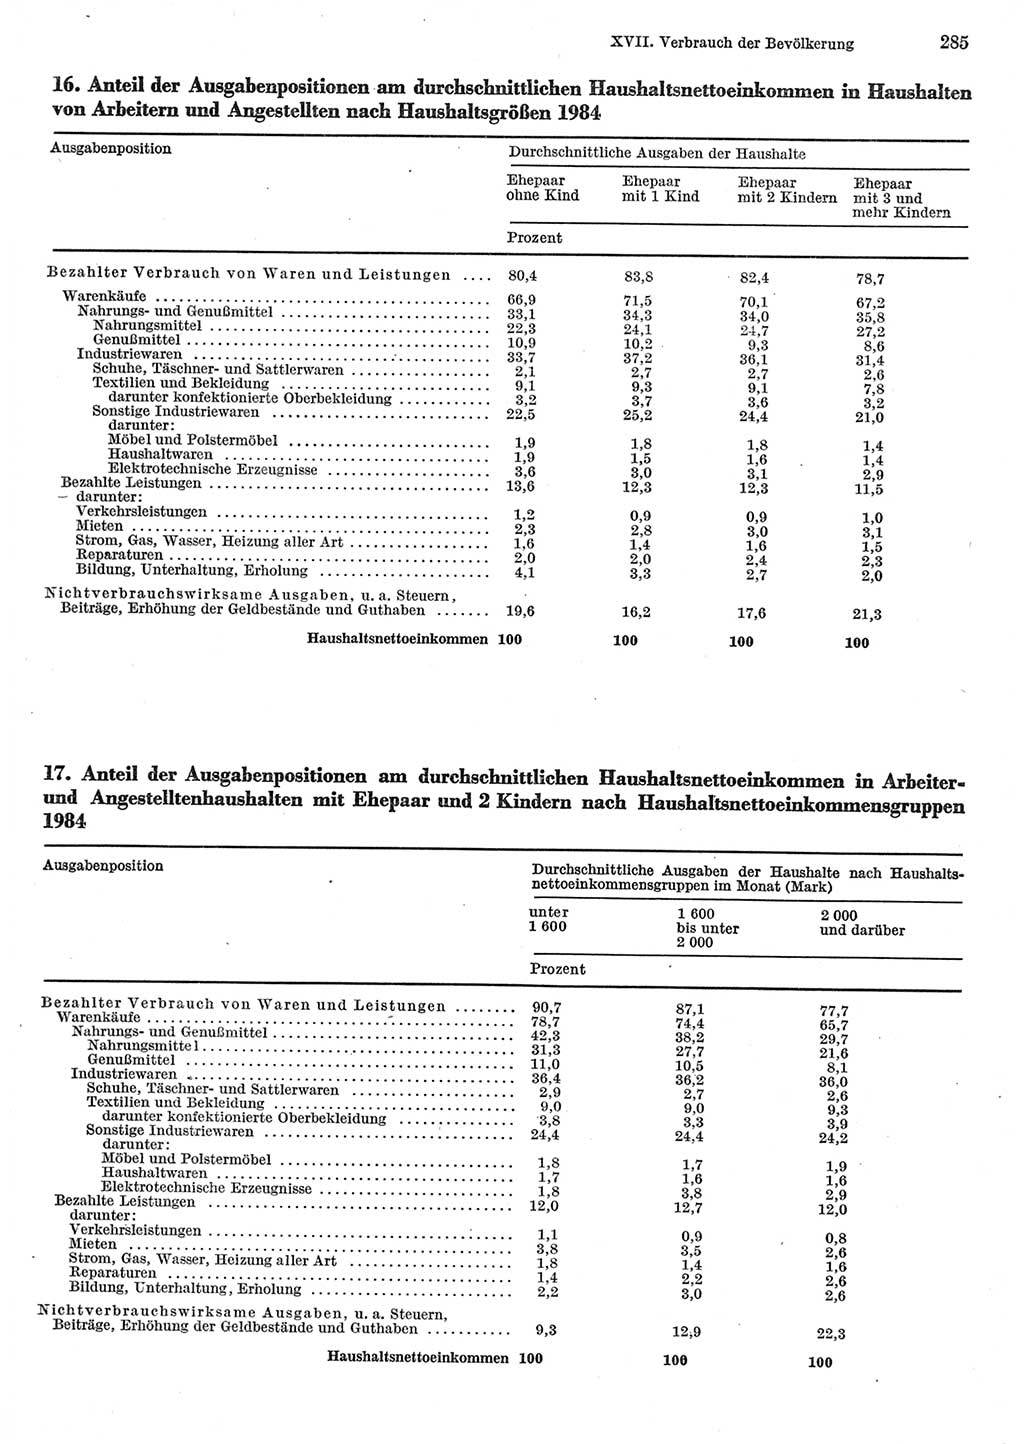 Statistisches Jahrbuch der Deutschen Demokratischen Republik (DDR) 1985, Seite 285 (Stat. Jb. DDR 1985, S. 285)